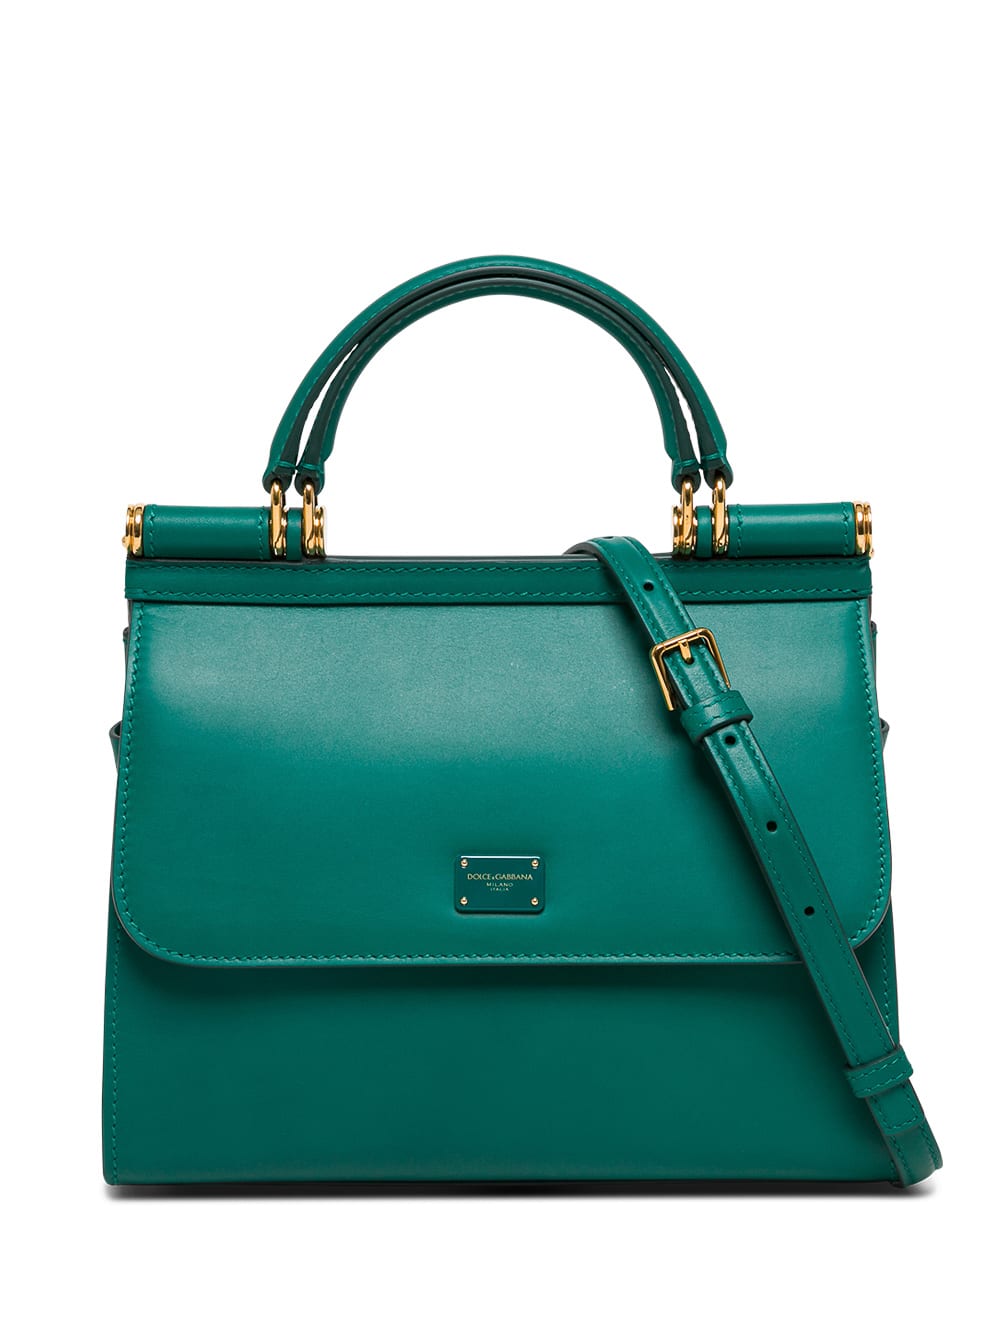 Dolce & Gabbana Sicliy Green Leather Handbag